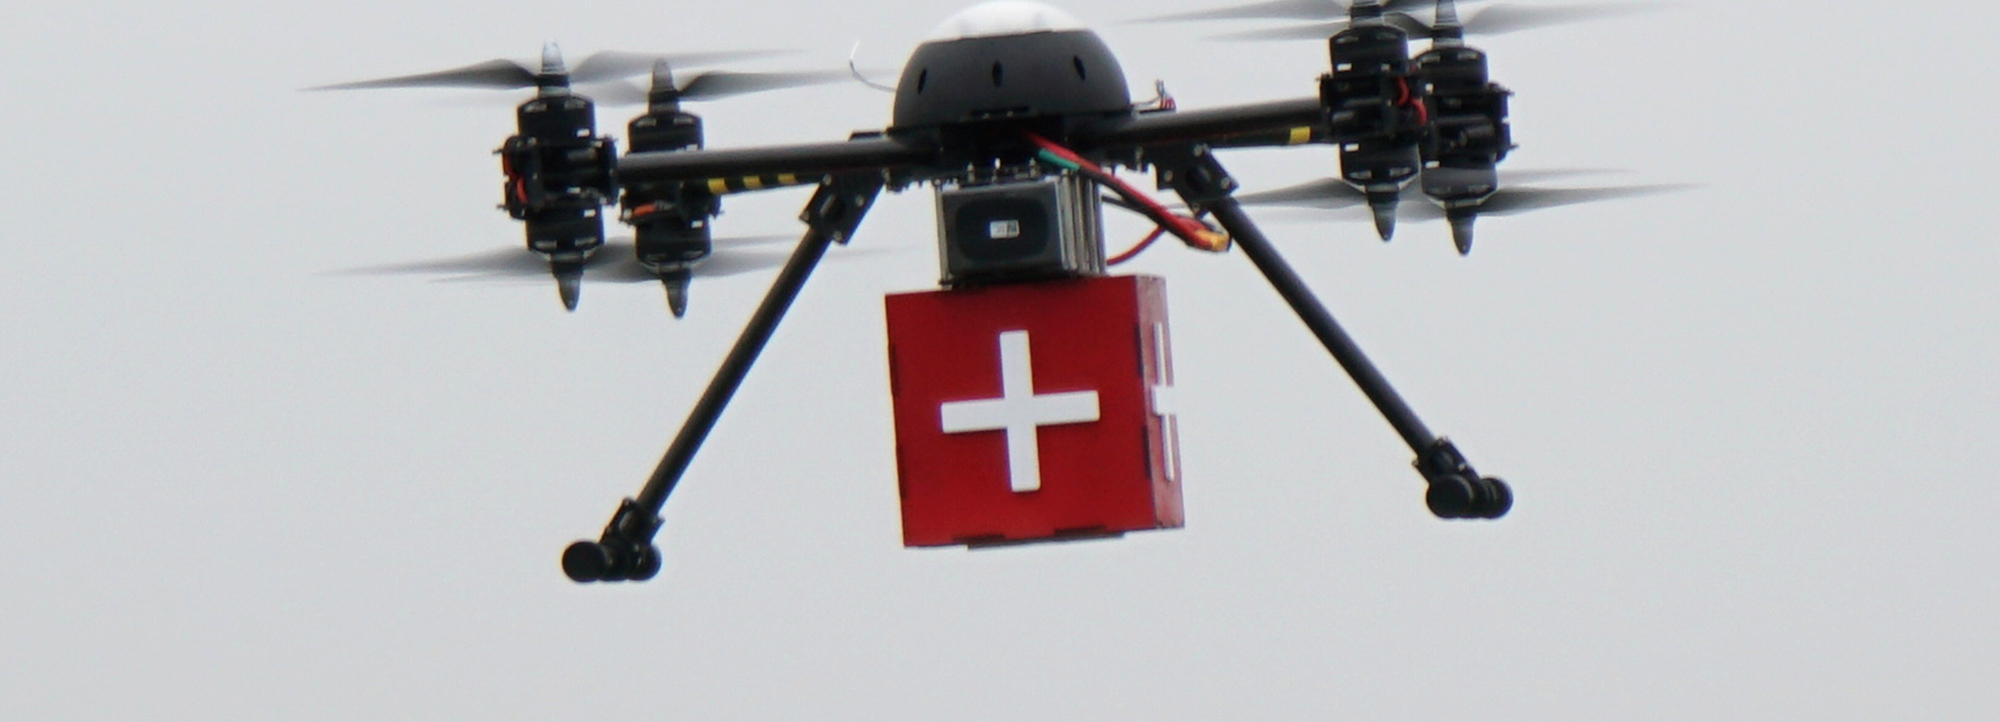 Droner skal flyve blodprøver og læger mellem hospitaler